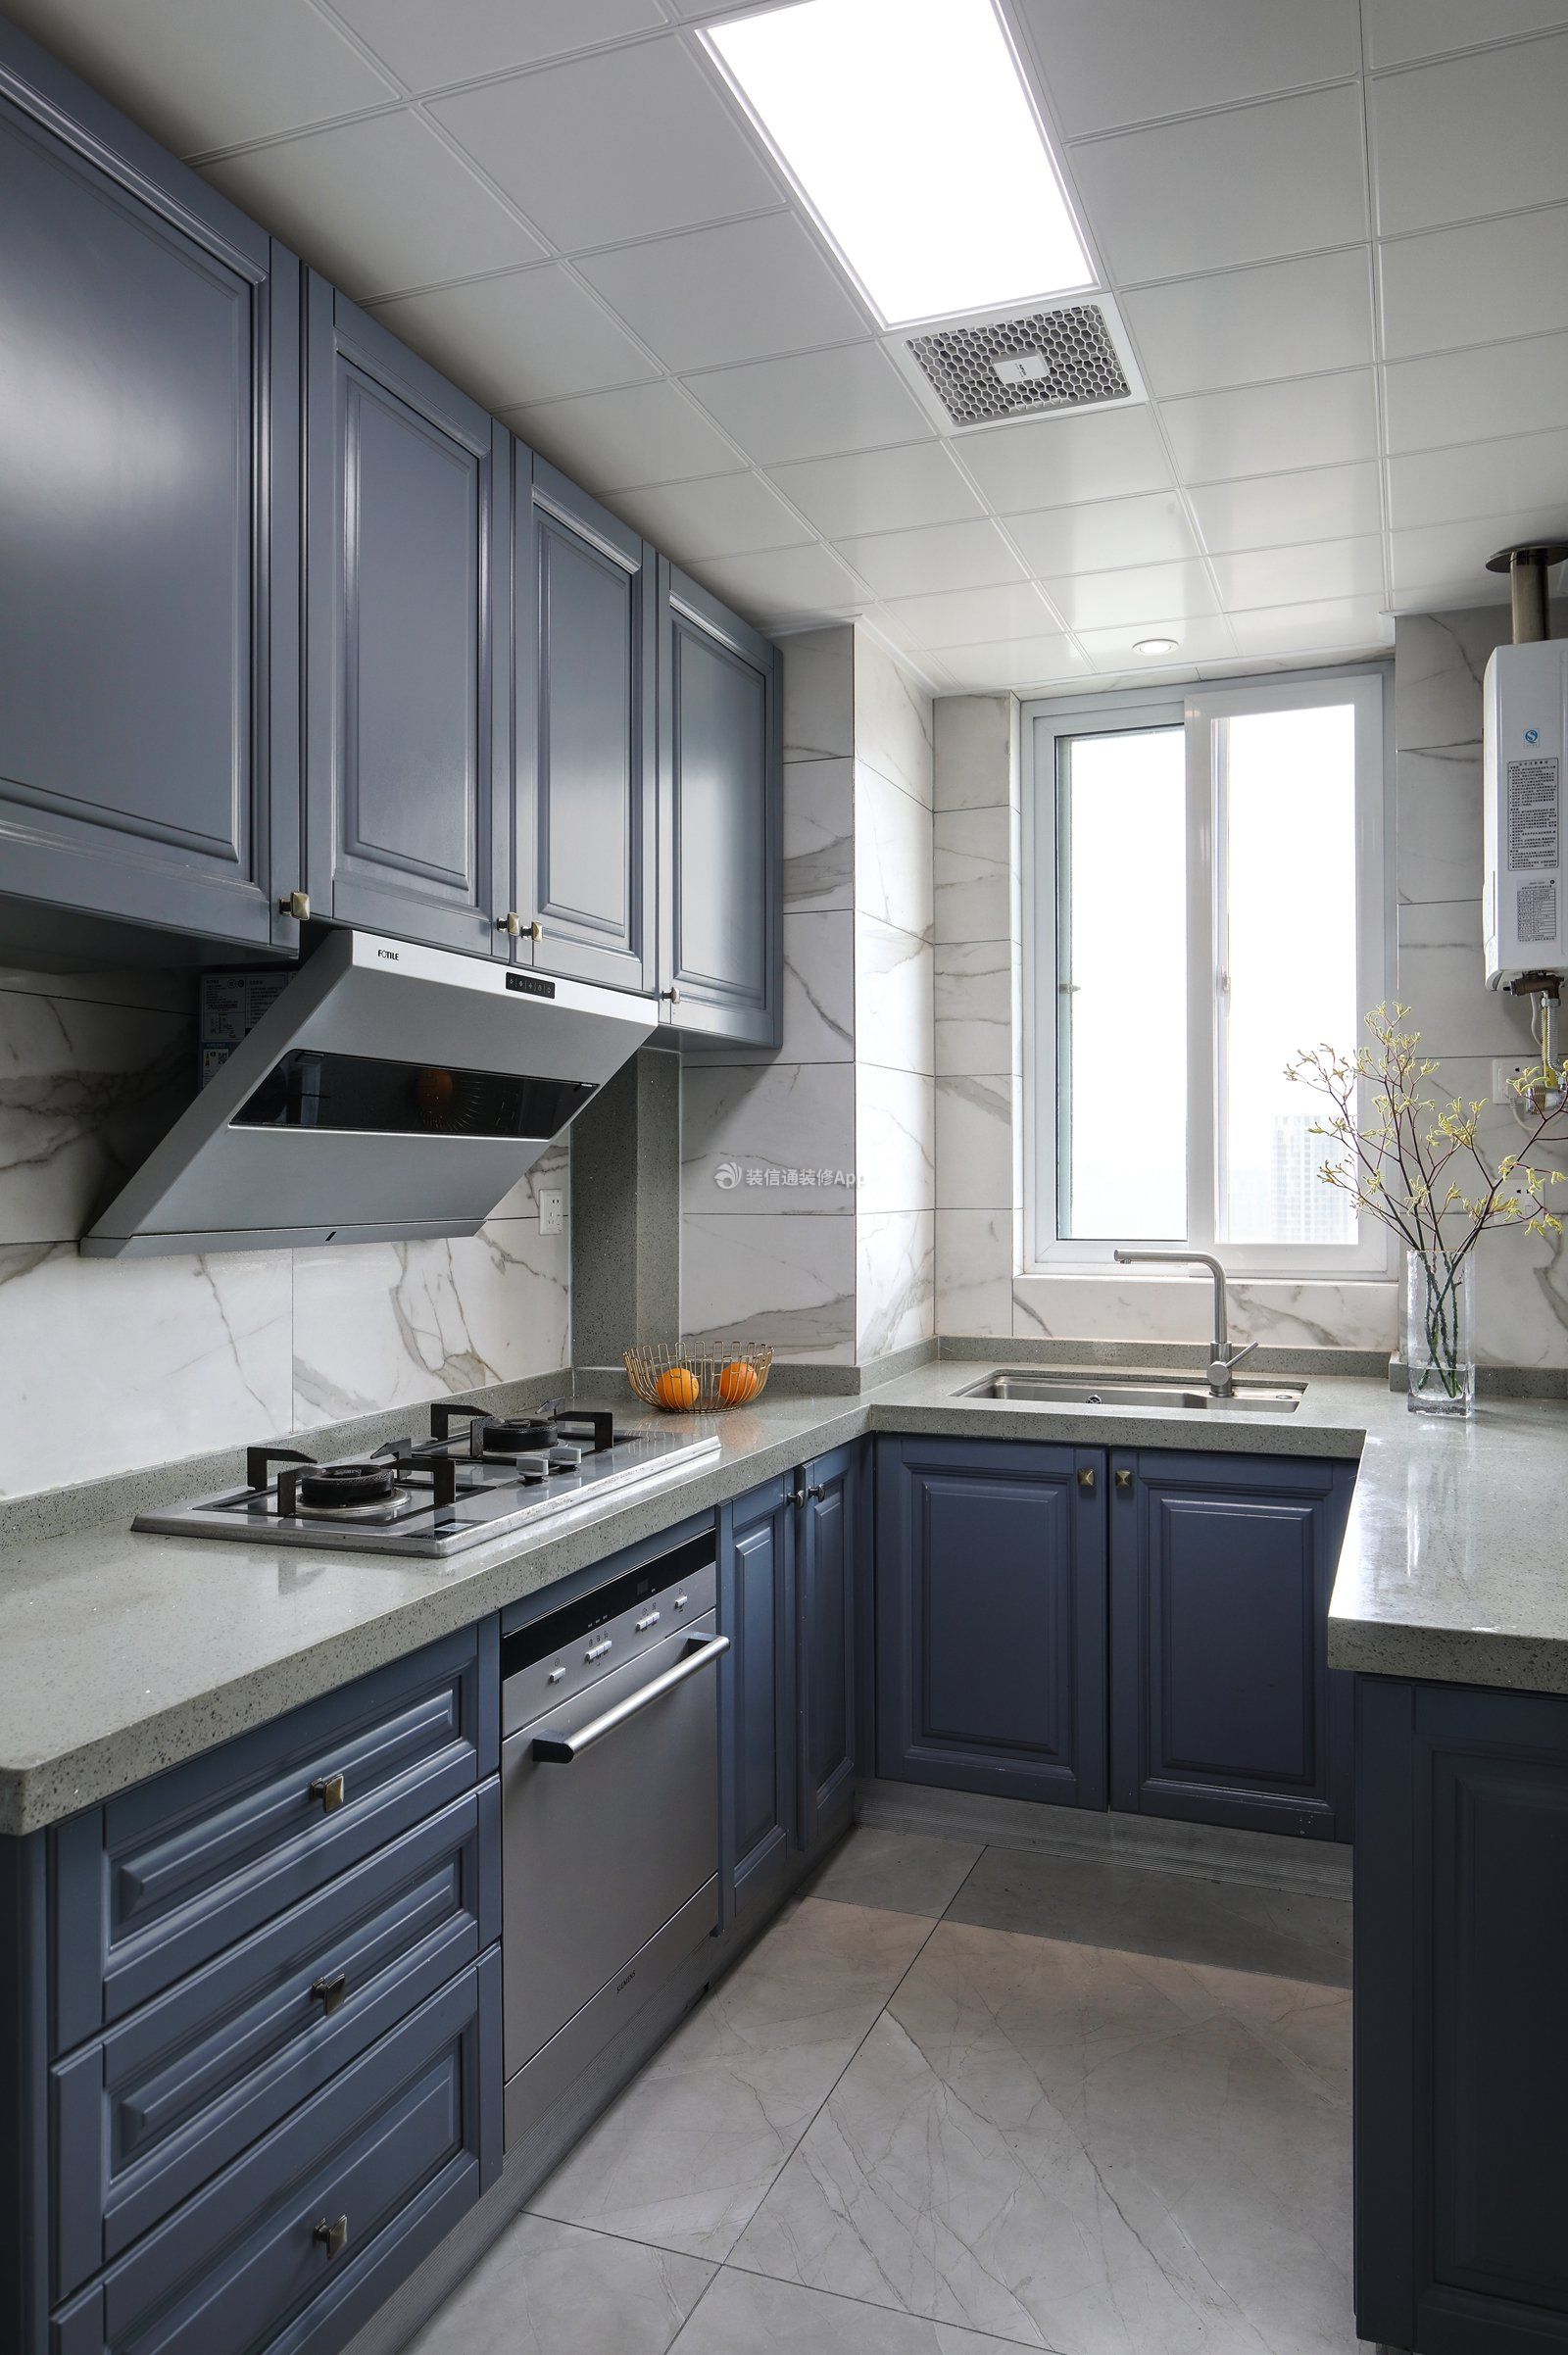 欧式风格新房装修厨房吊柜设计图大全